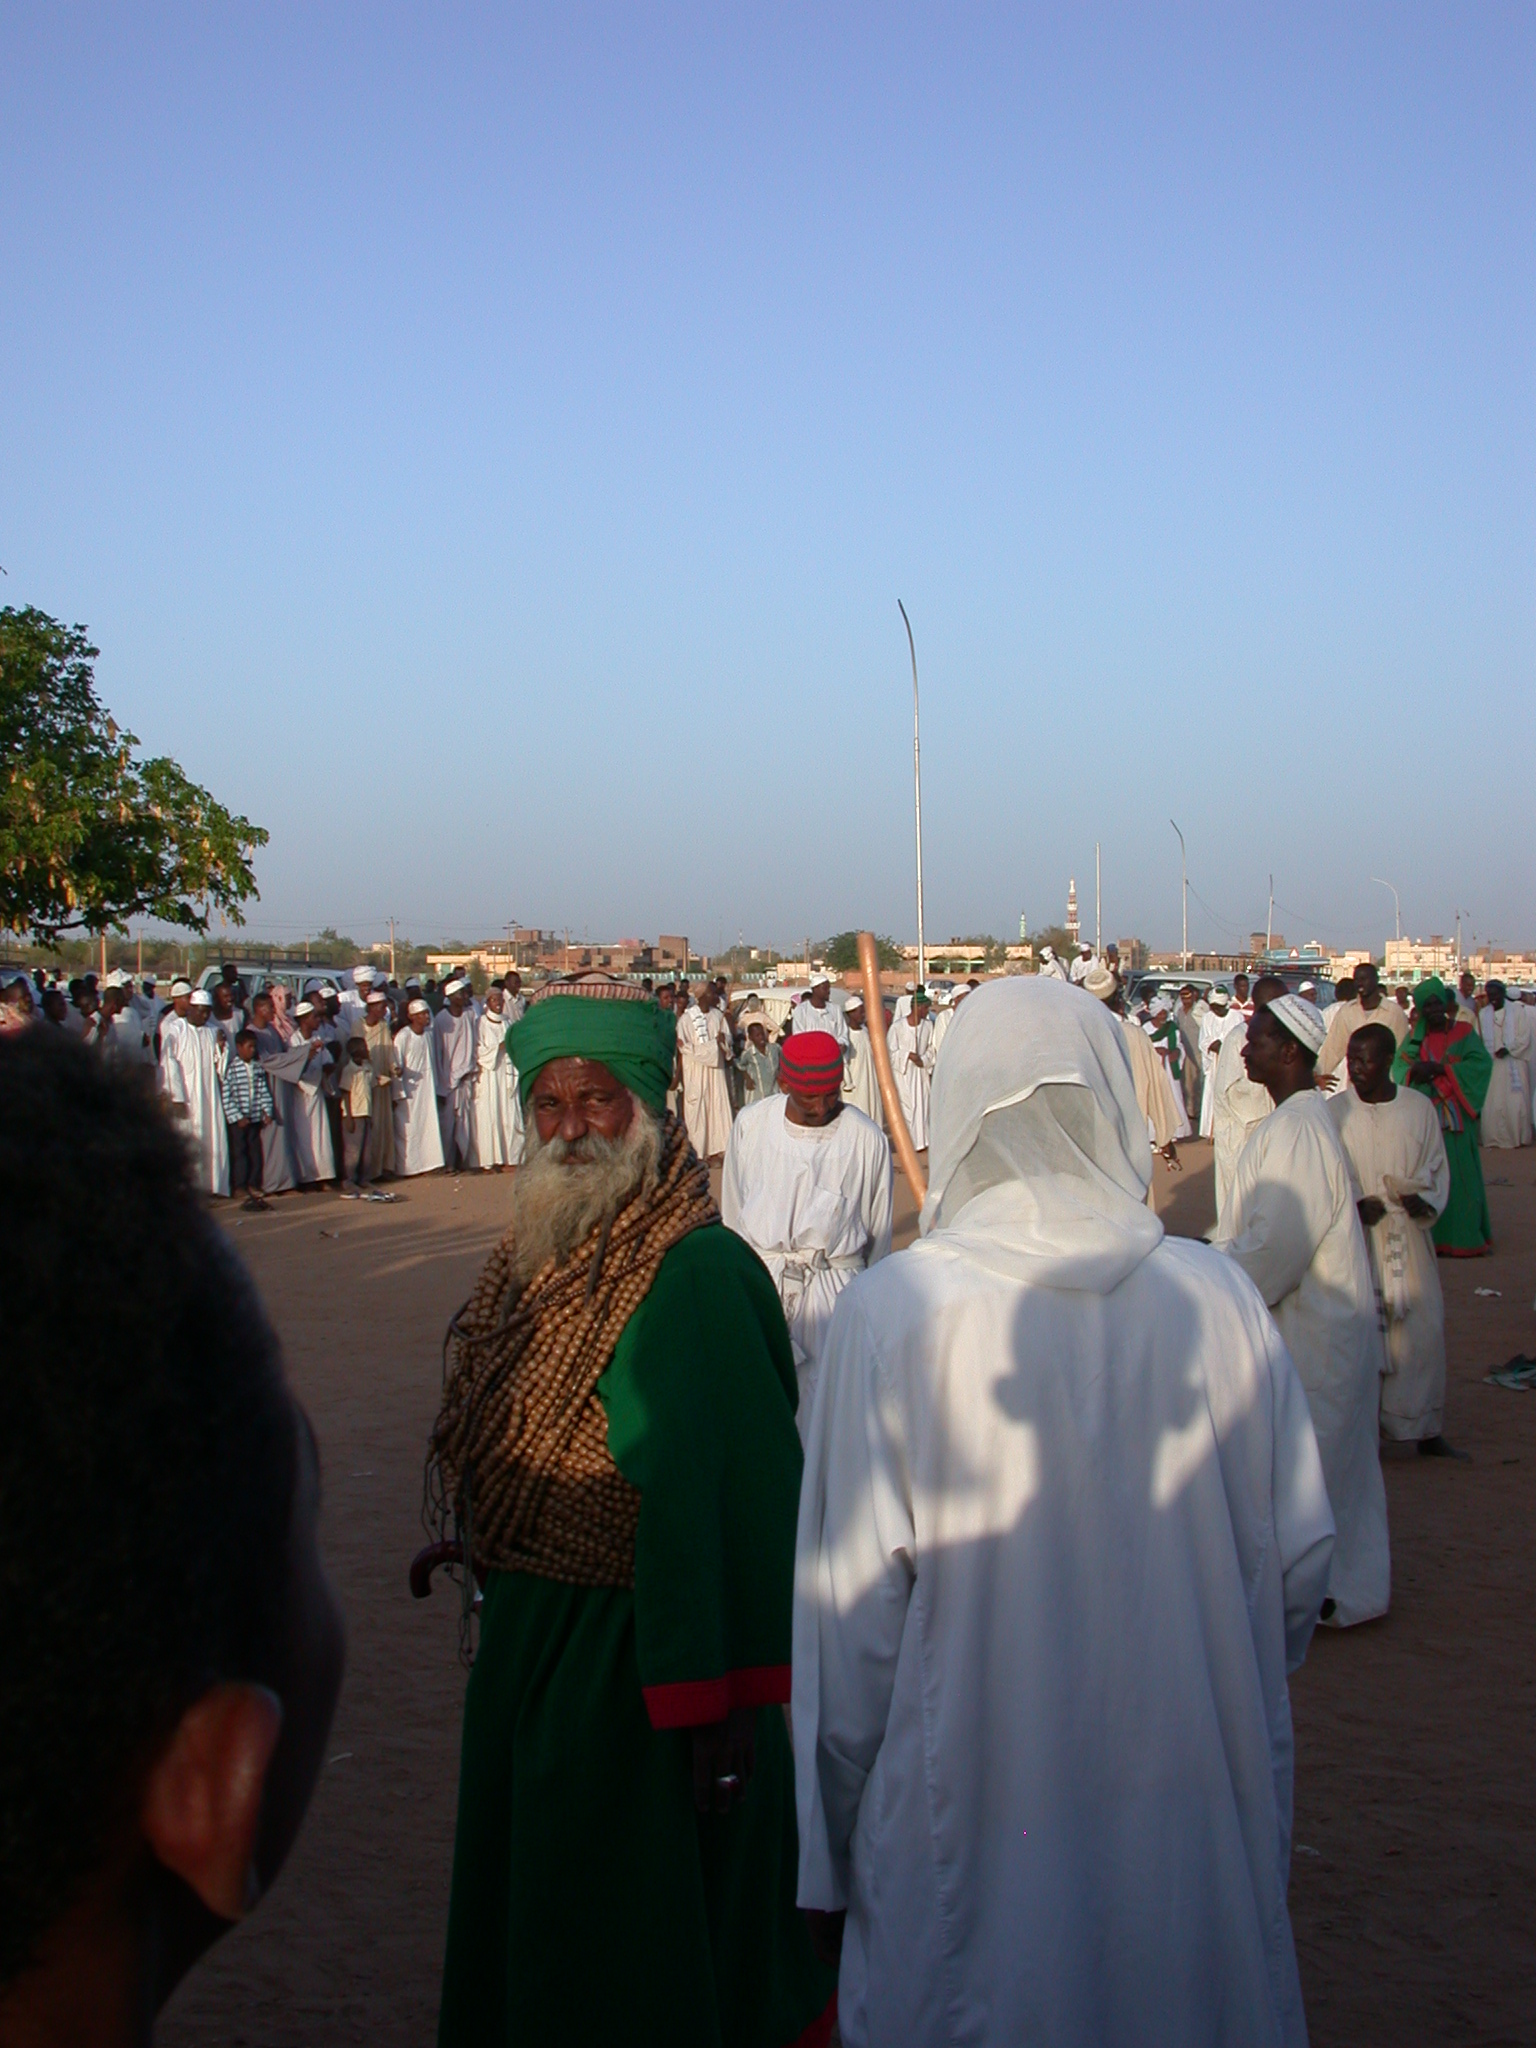 Sufis at Sufi Dancing Site, Omdurman, Sudan